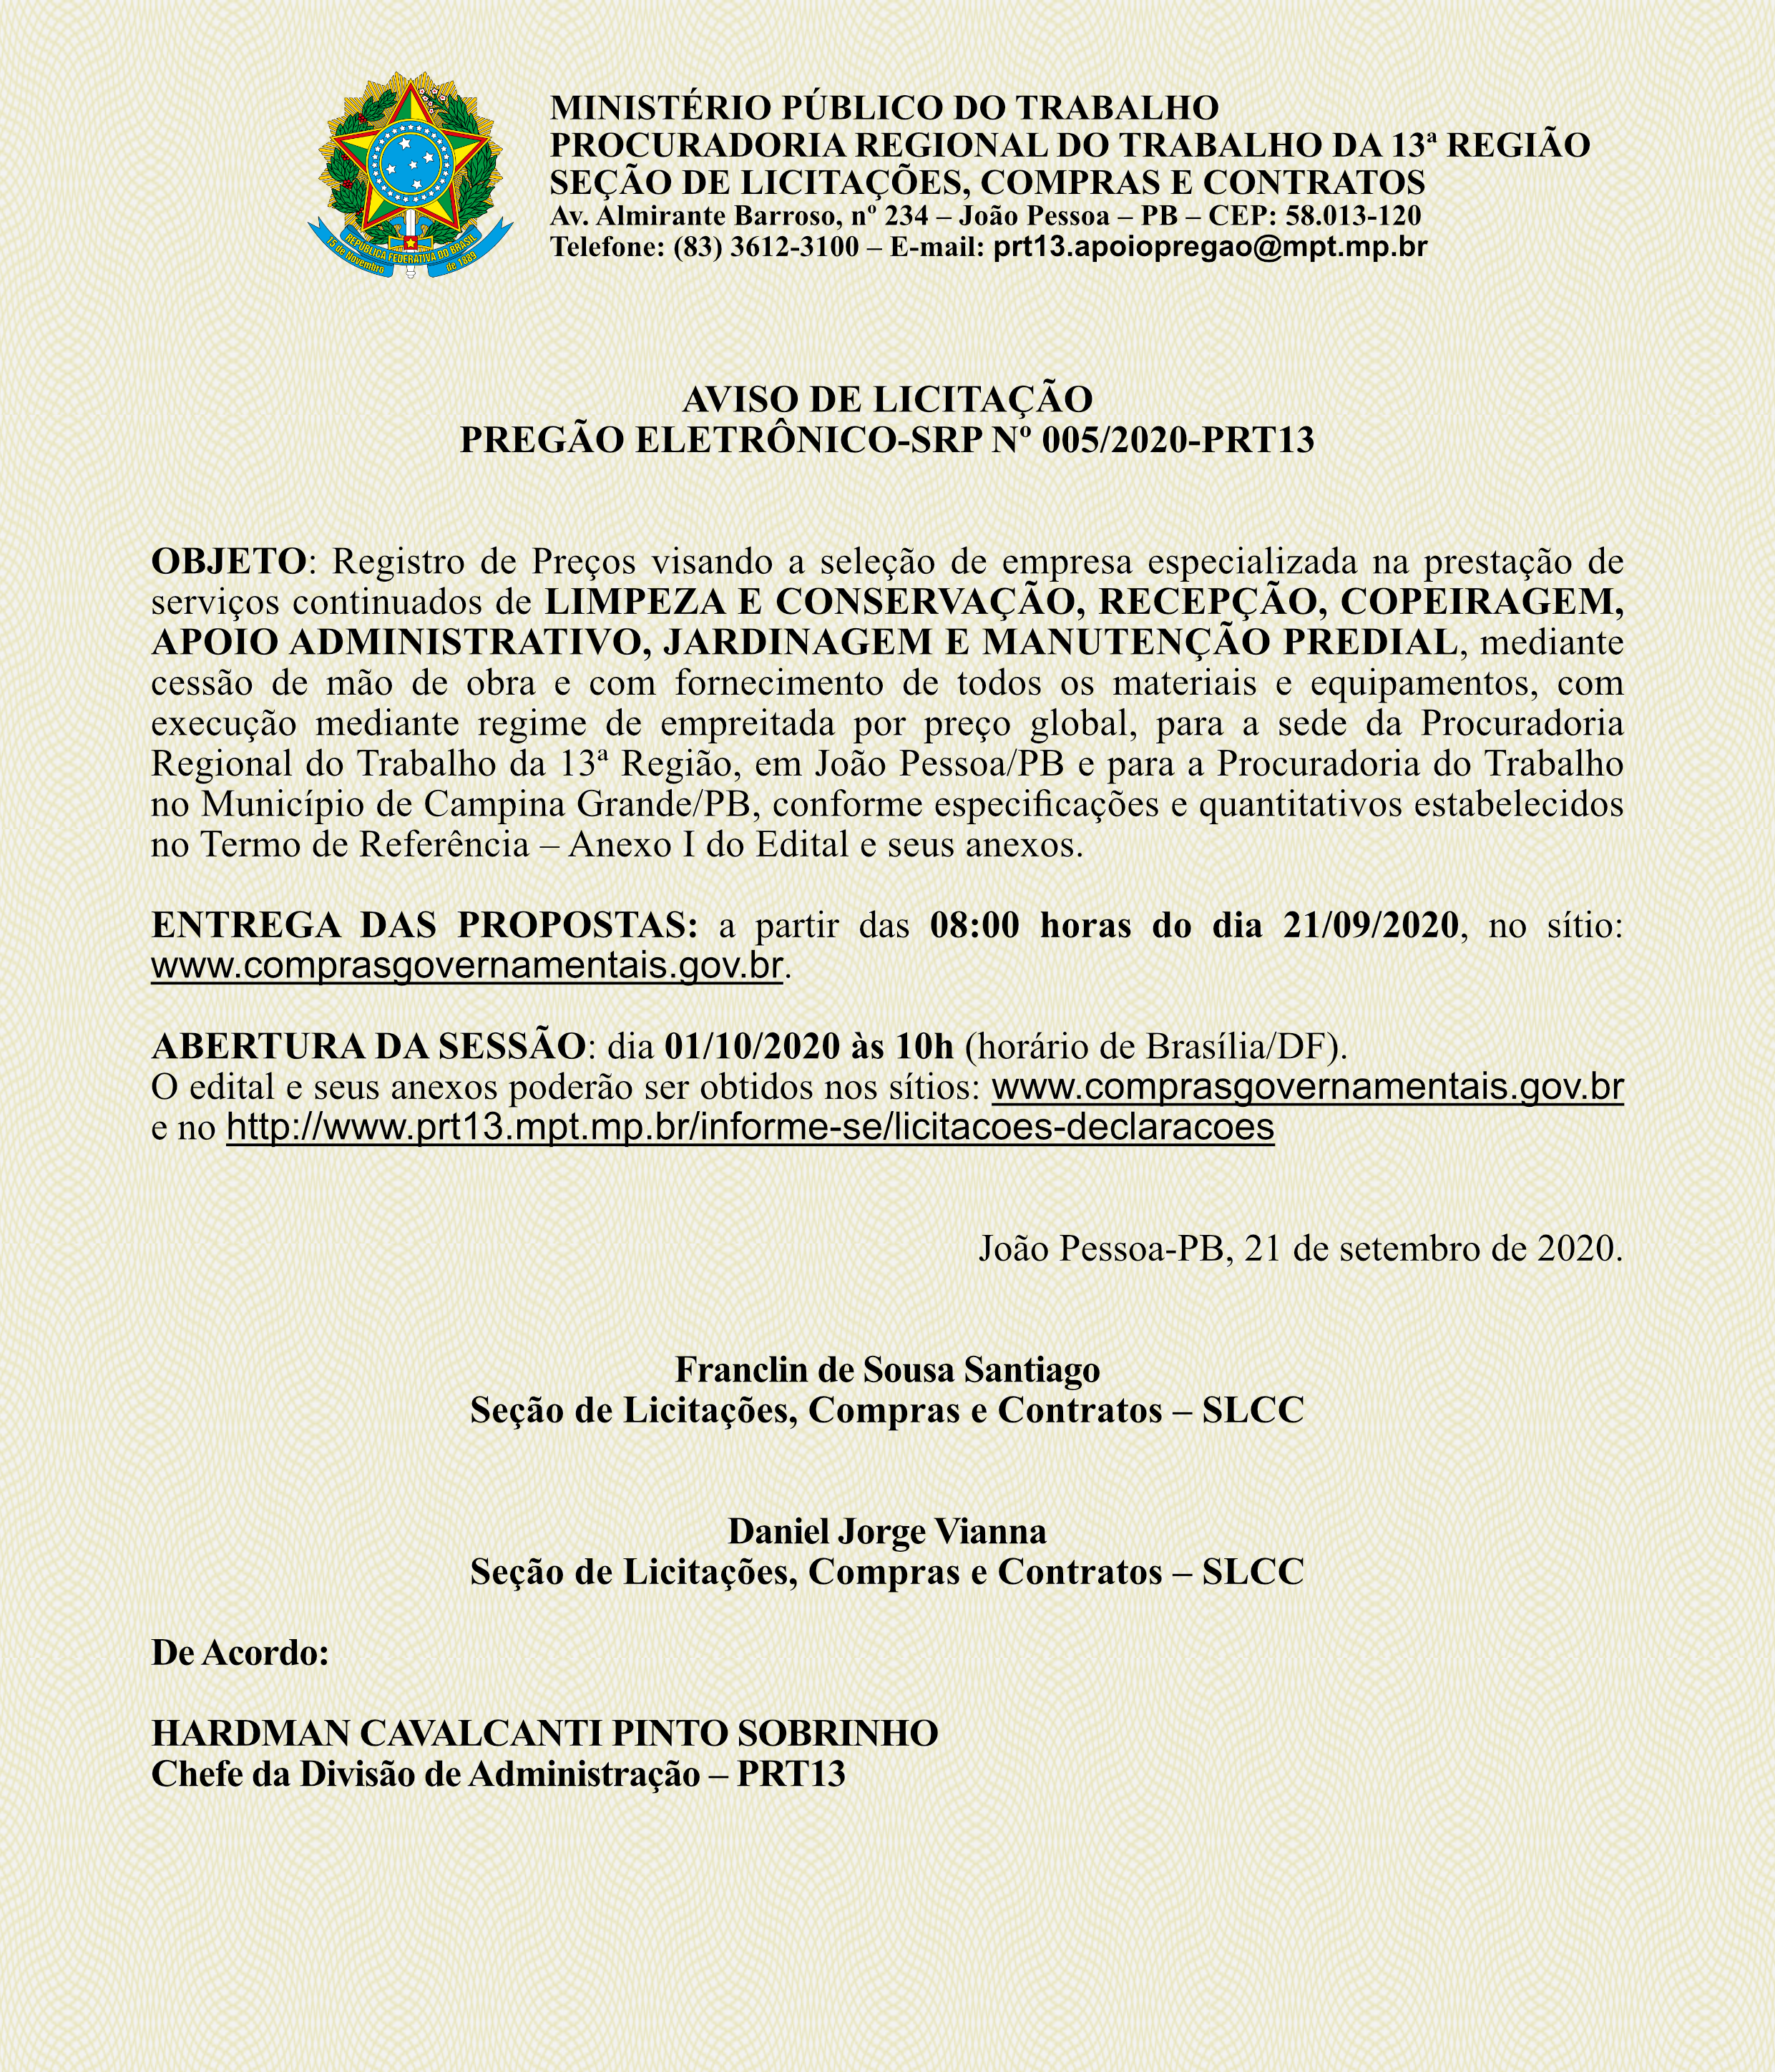 MINISTÉRIO PÚBLICO DO TRABALHO – AVISO DE LICITAÇÃO – PREGÃO ELETRÔNICO-SRP Nº 005/2020-PRT13